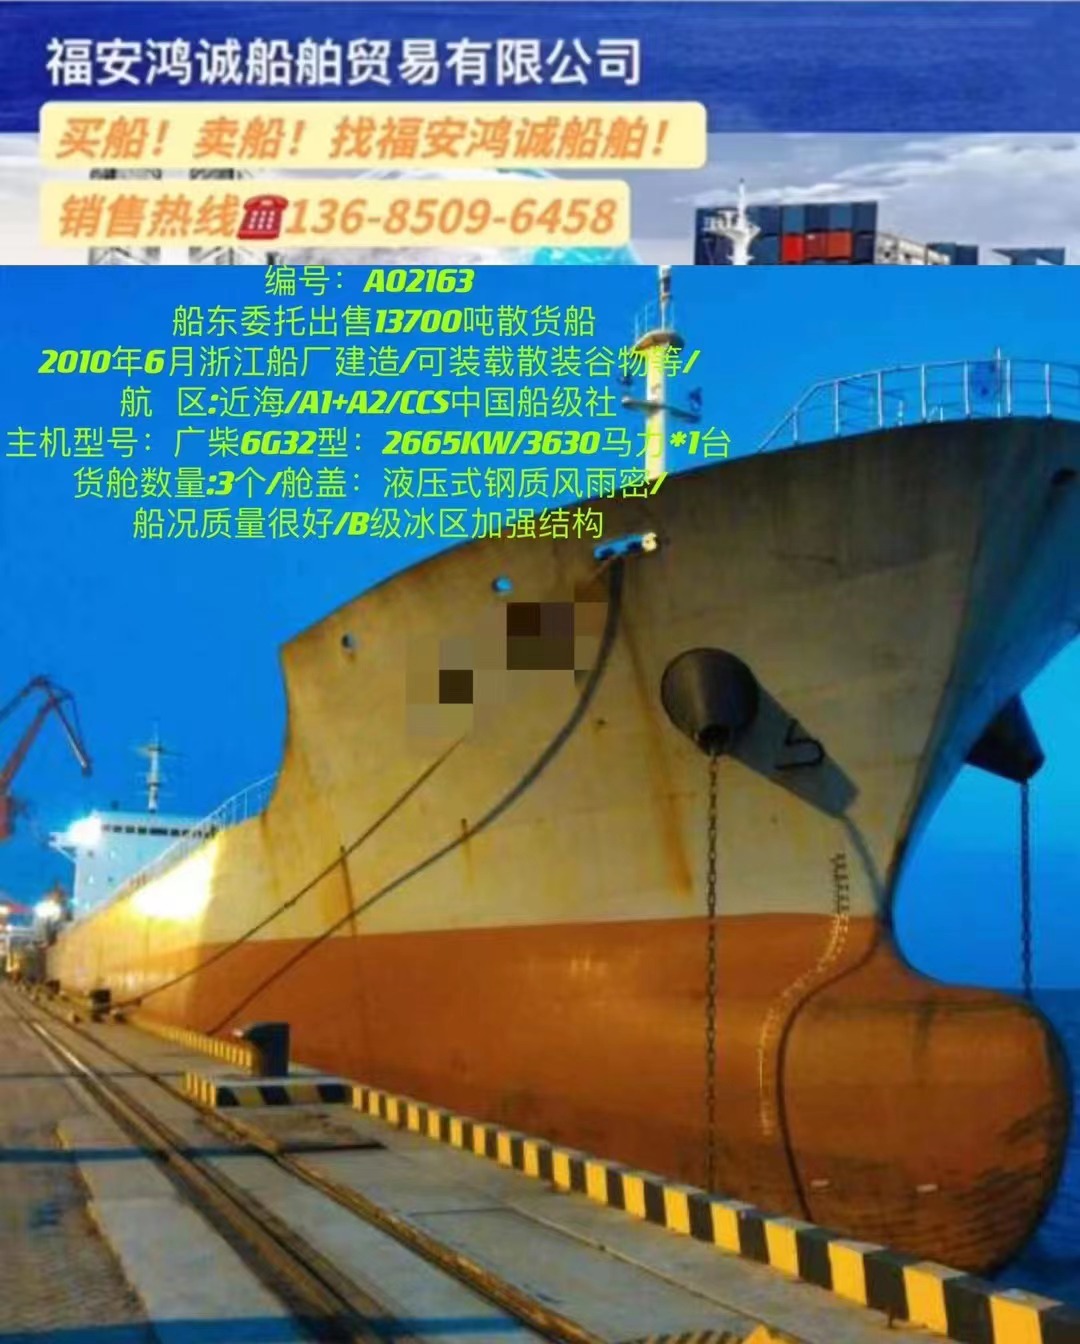 出售13700吨散货船 2010年6月浙江船厂建造